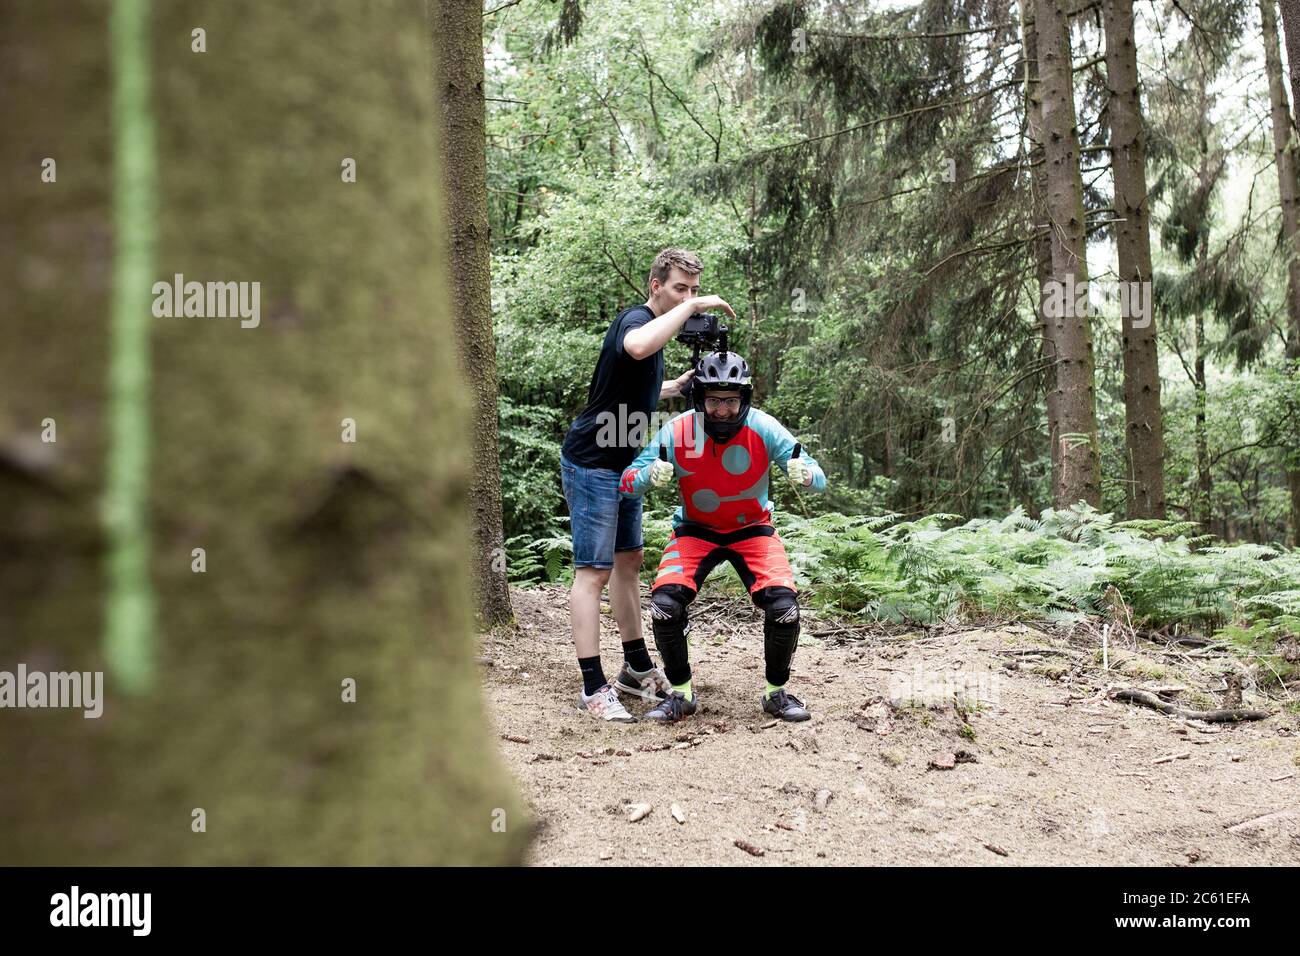 Rösrath, 04.07.20: Reportage Mountainbiken Downhill fahren im Rösrather Wald, die Helmkamera wird eingestellt. Foto Stock